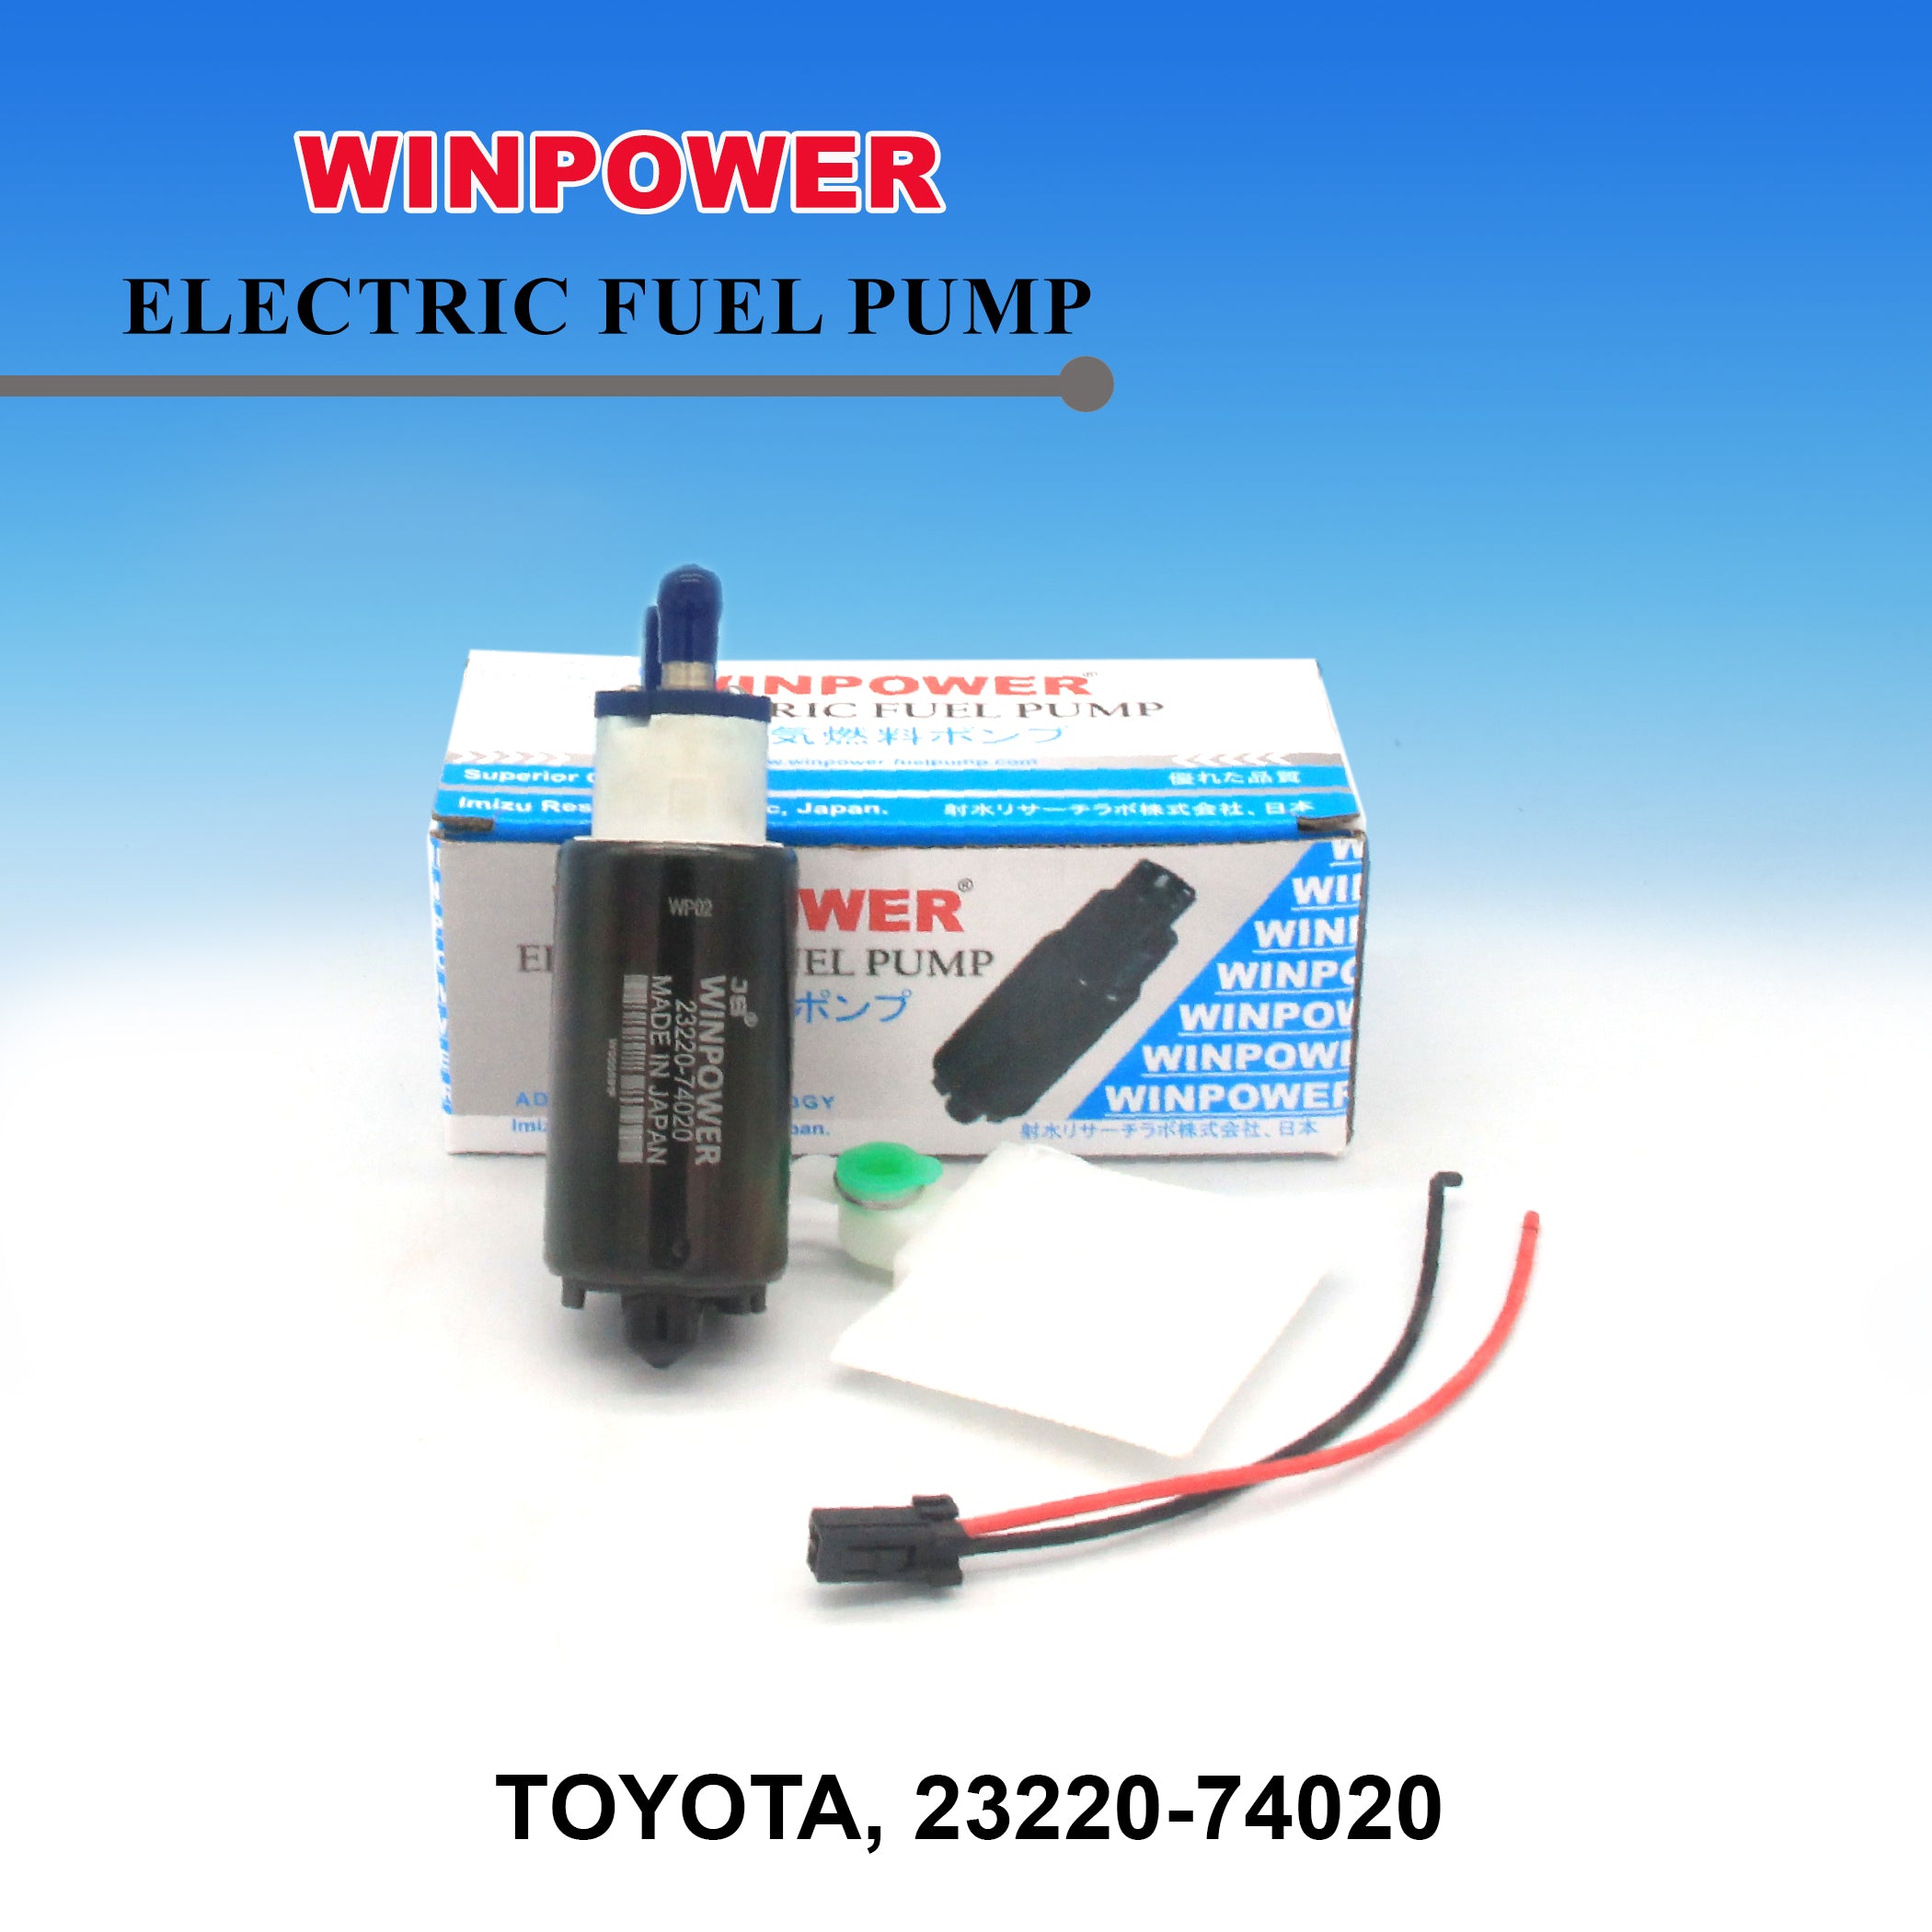 In-Tank Fuel Pump, WINPOWER, 23220-74020, WF-3808 (005070)